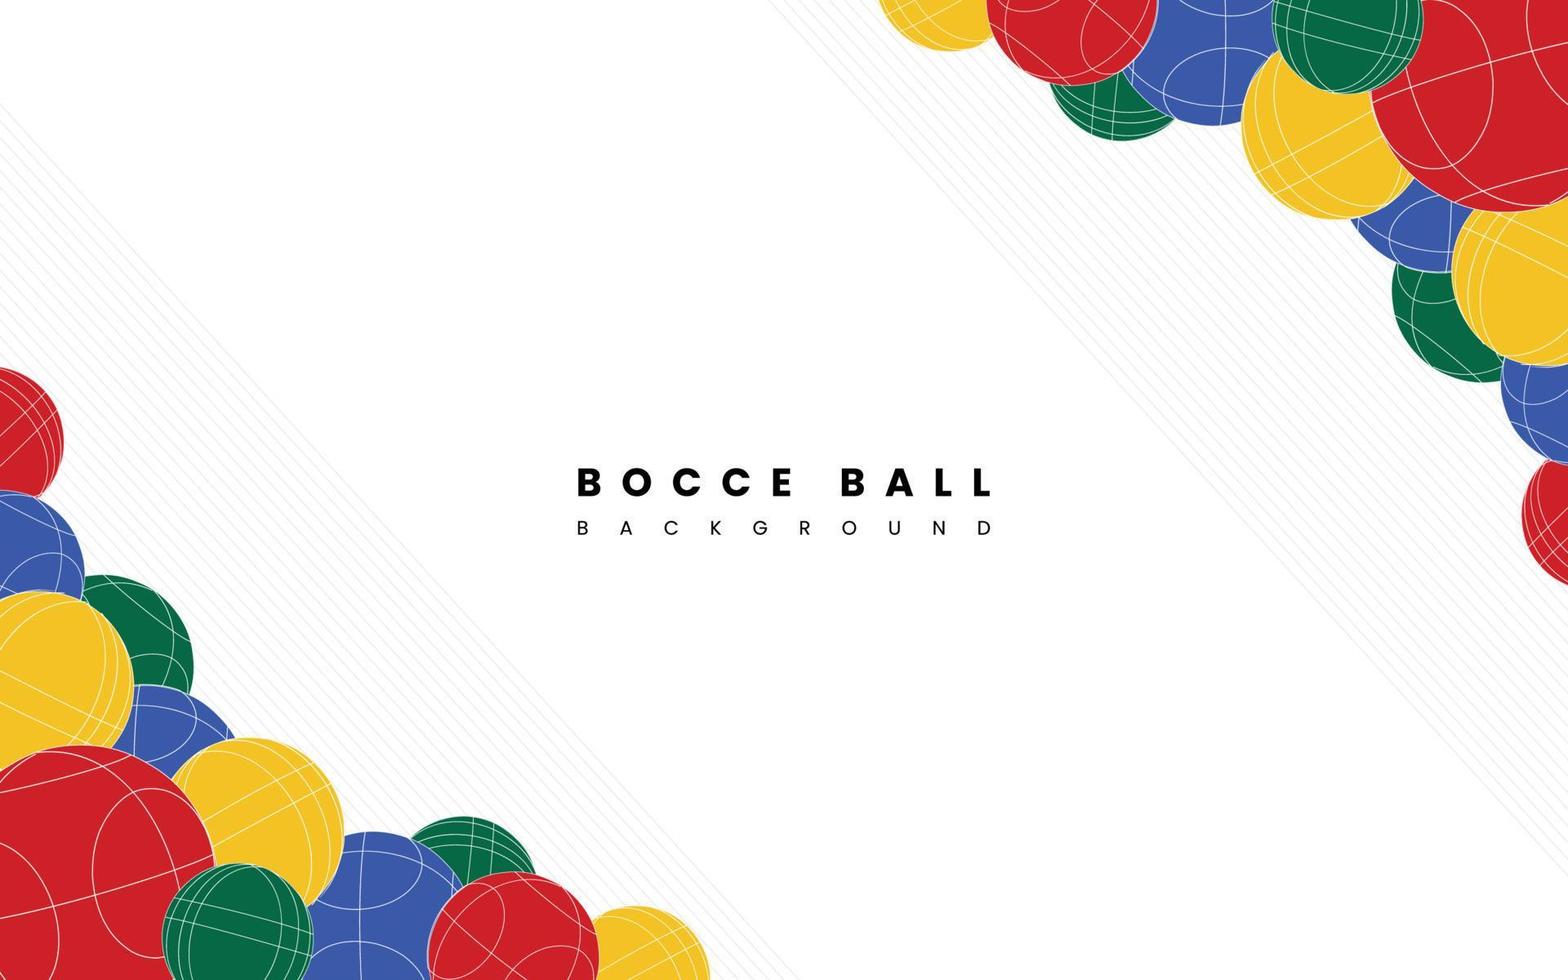 veel kleurrijke jeu de boules achtergronden kunnen worden gebruikt voor ontwerpdoeleinden met een jeu de boules thema. vector